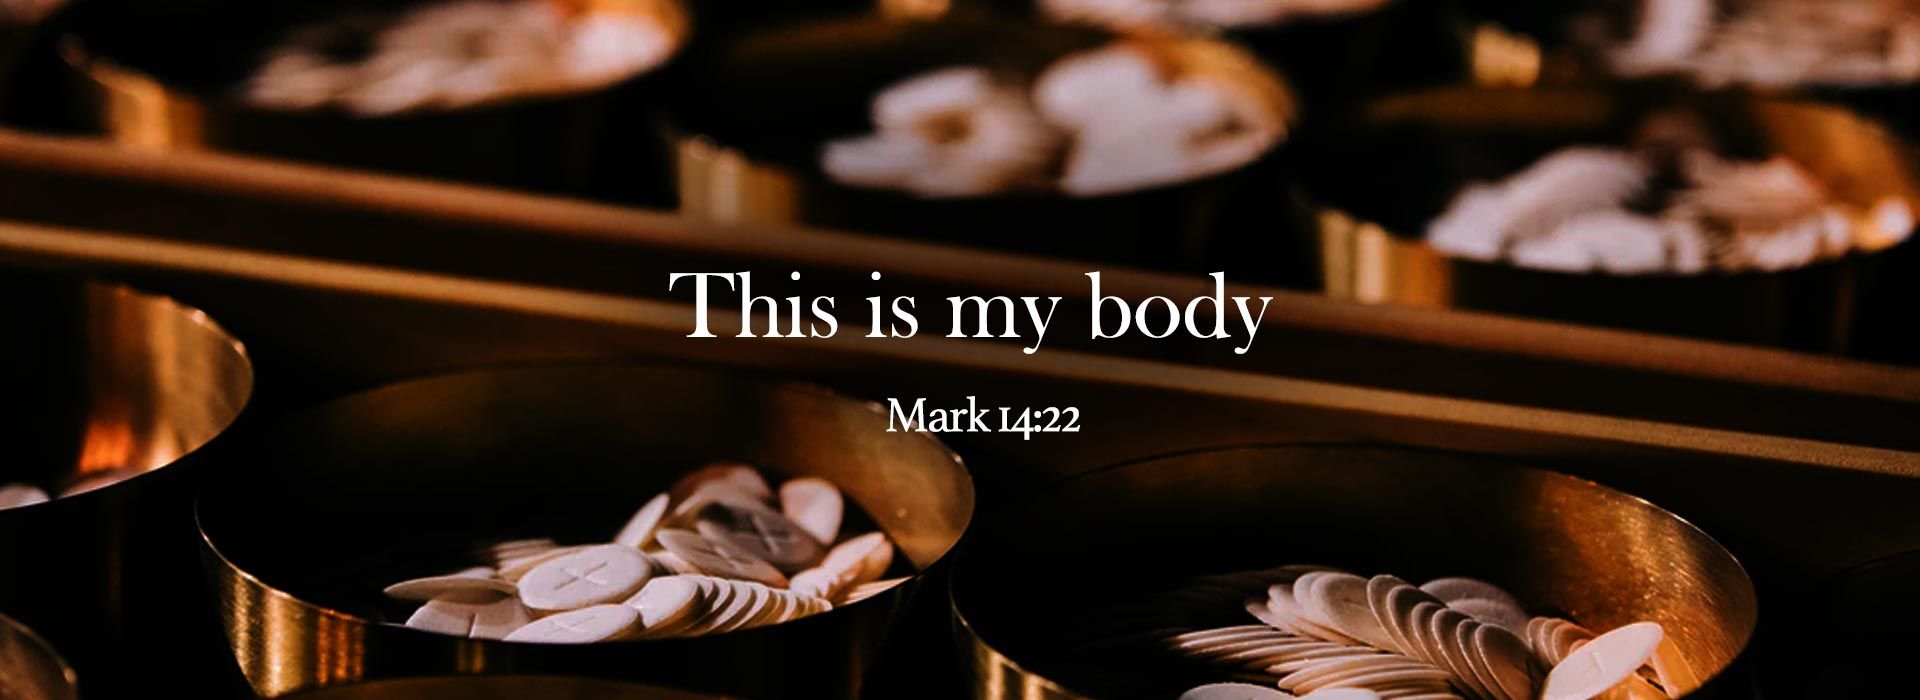 Mark 14:22